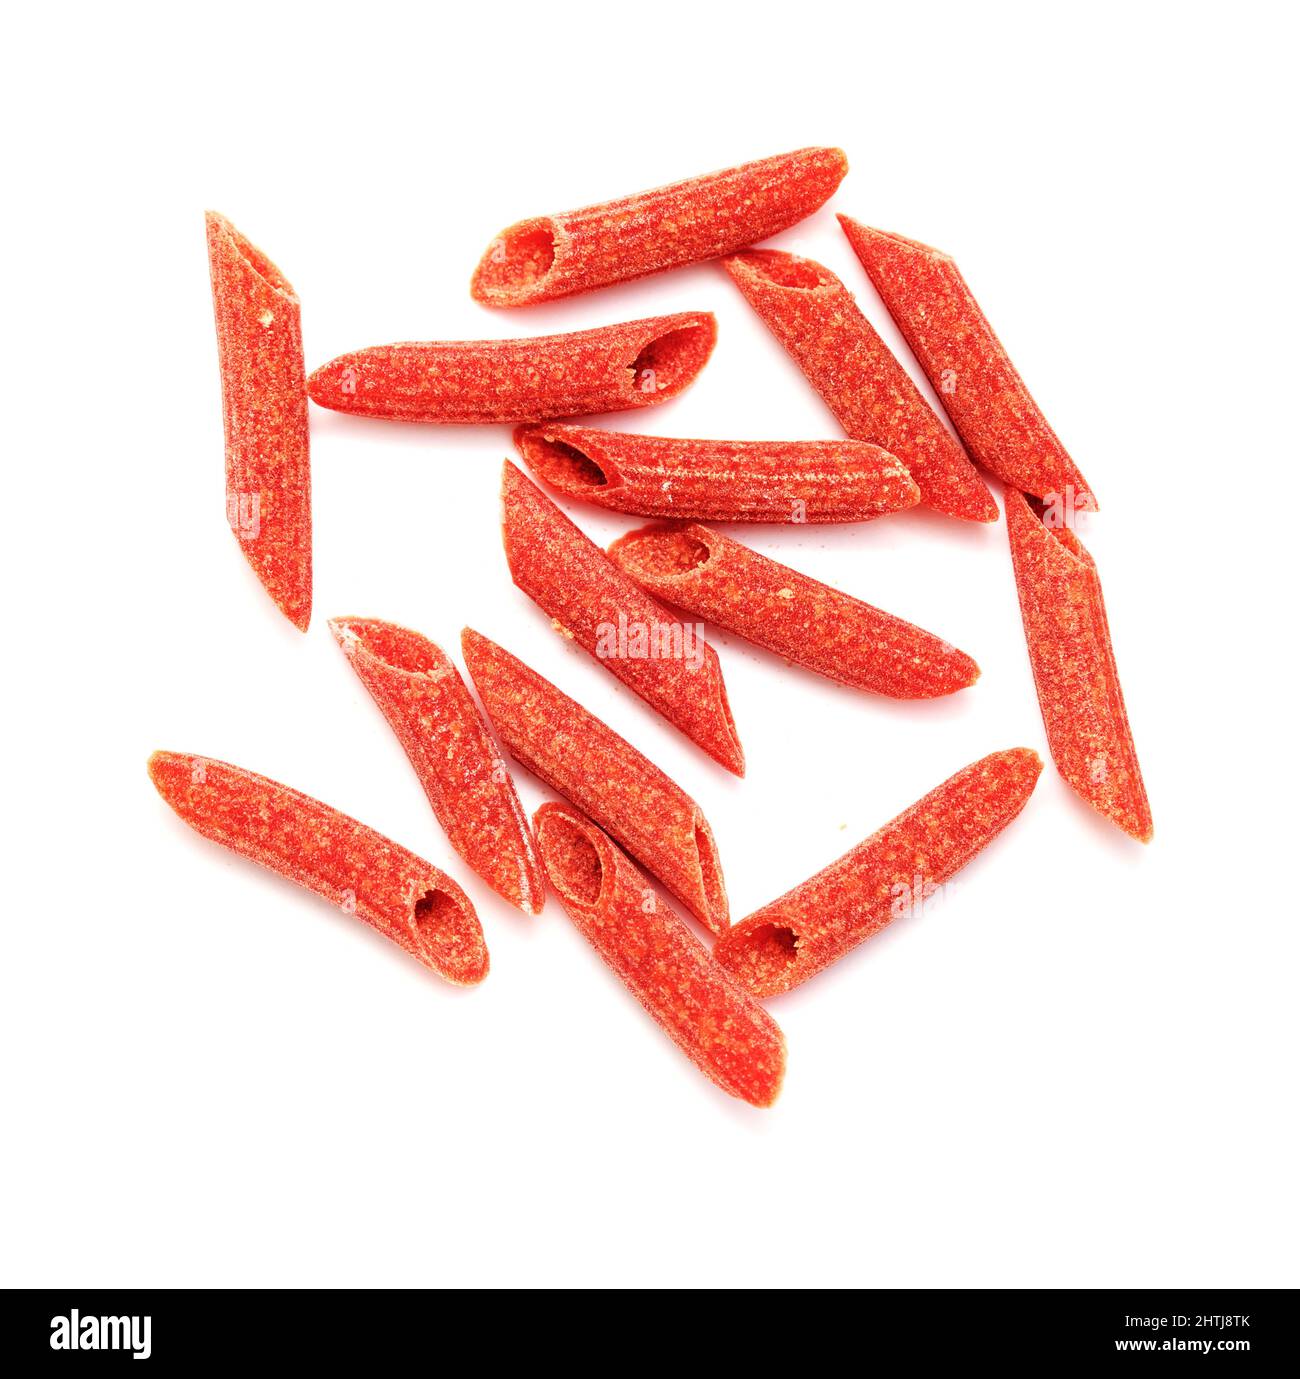 Pâtes Penne sèches avec coloration naturelle de betterave rouge isolée sur fond blanc Banque D'Images